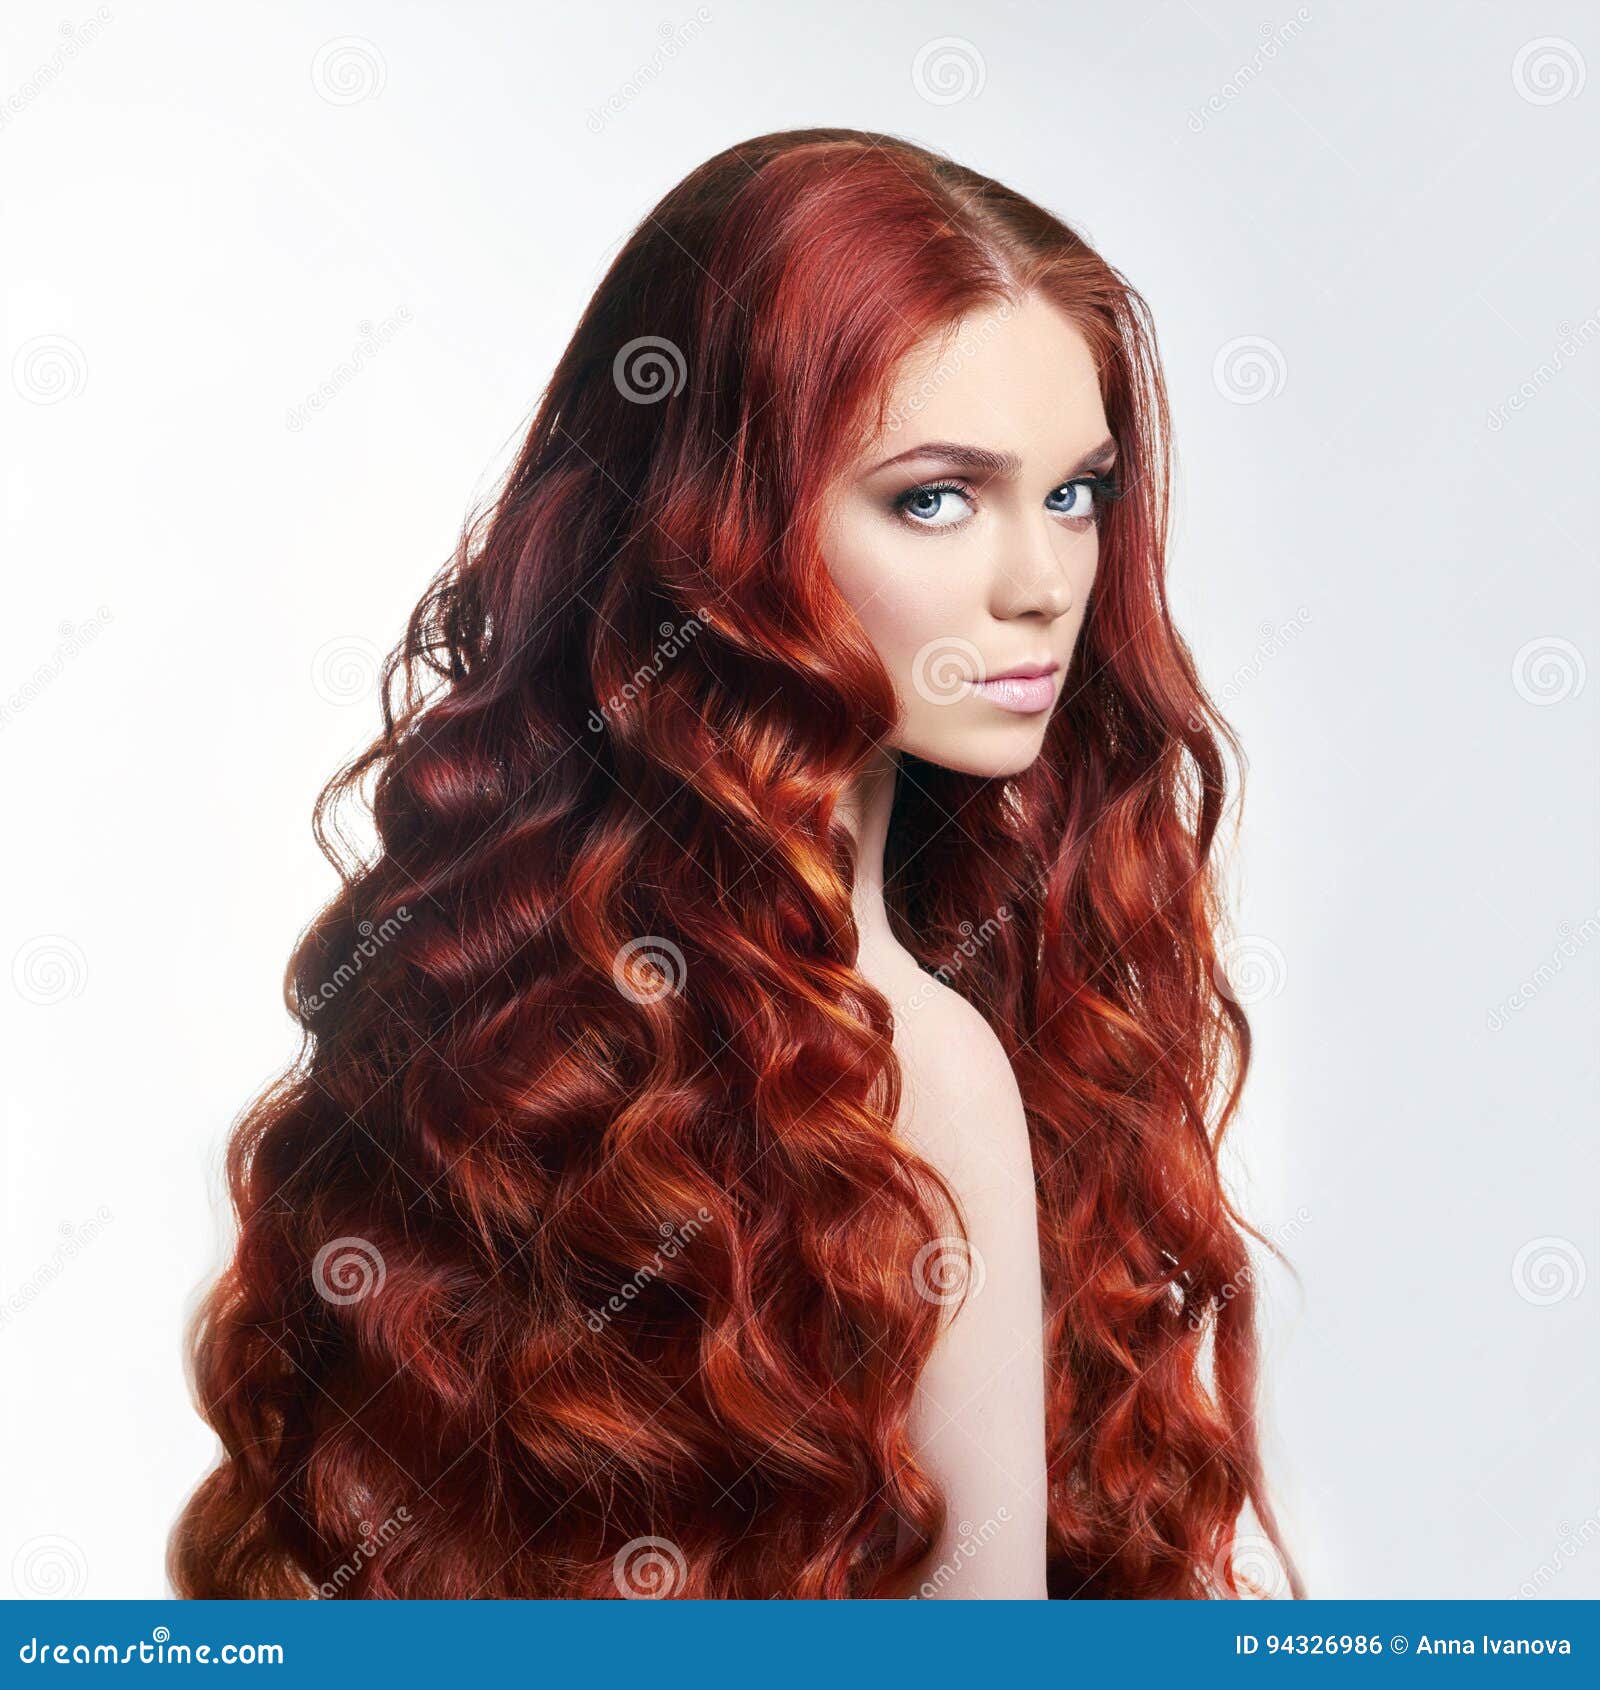 alex raileanu recommends beautiful nude redheads pic